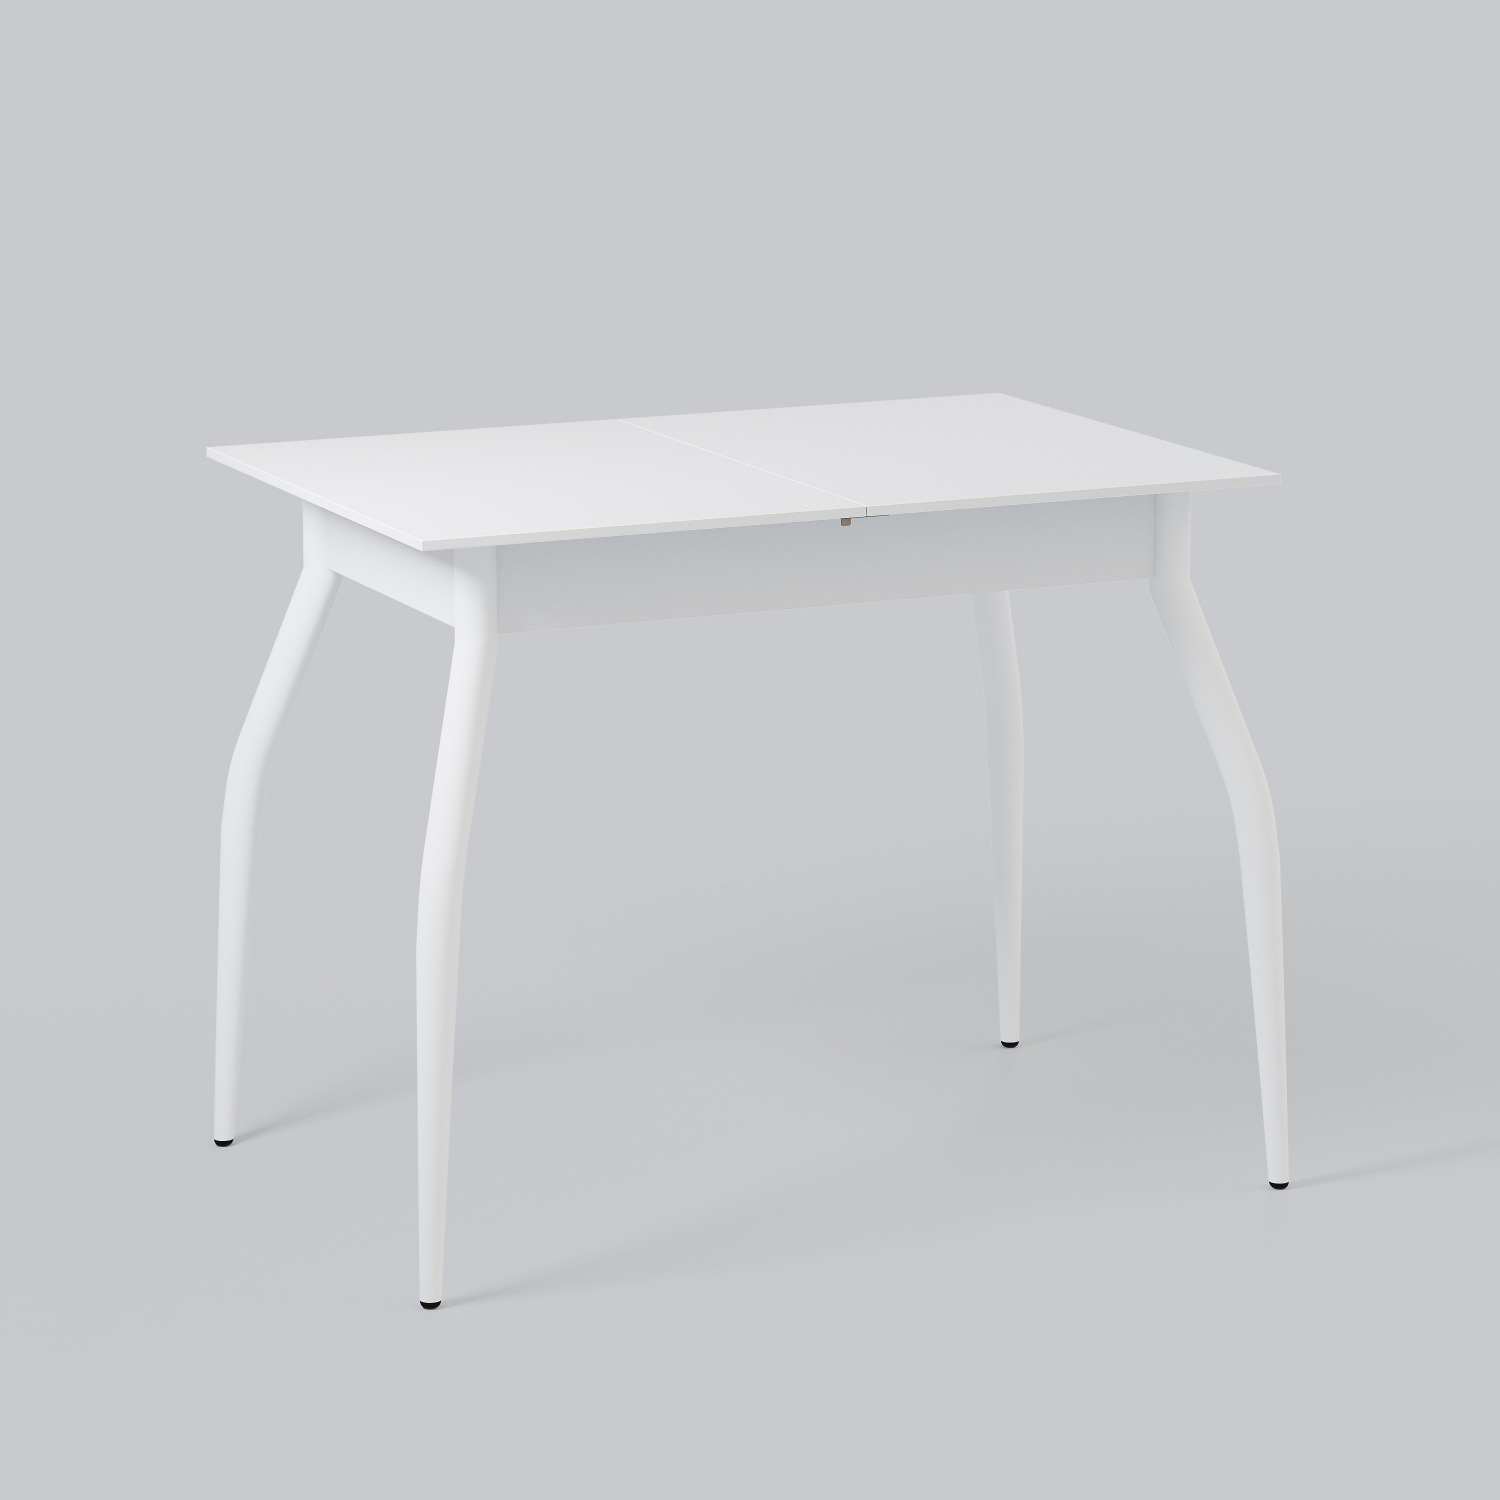 Стол кухонный раздвижной DecoLine-1 900(1200)*600мм ноги 01 белые (Белый)